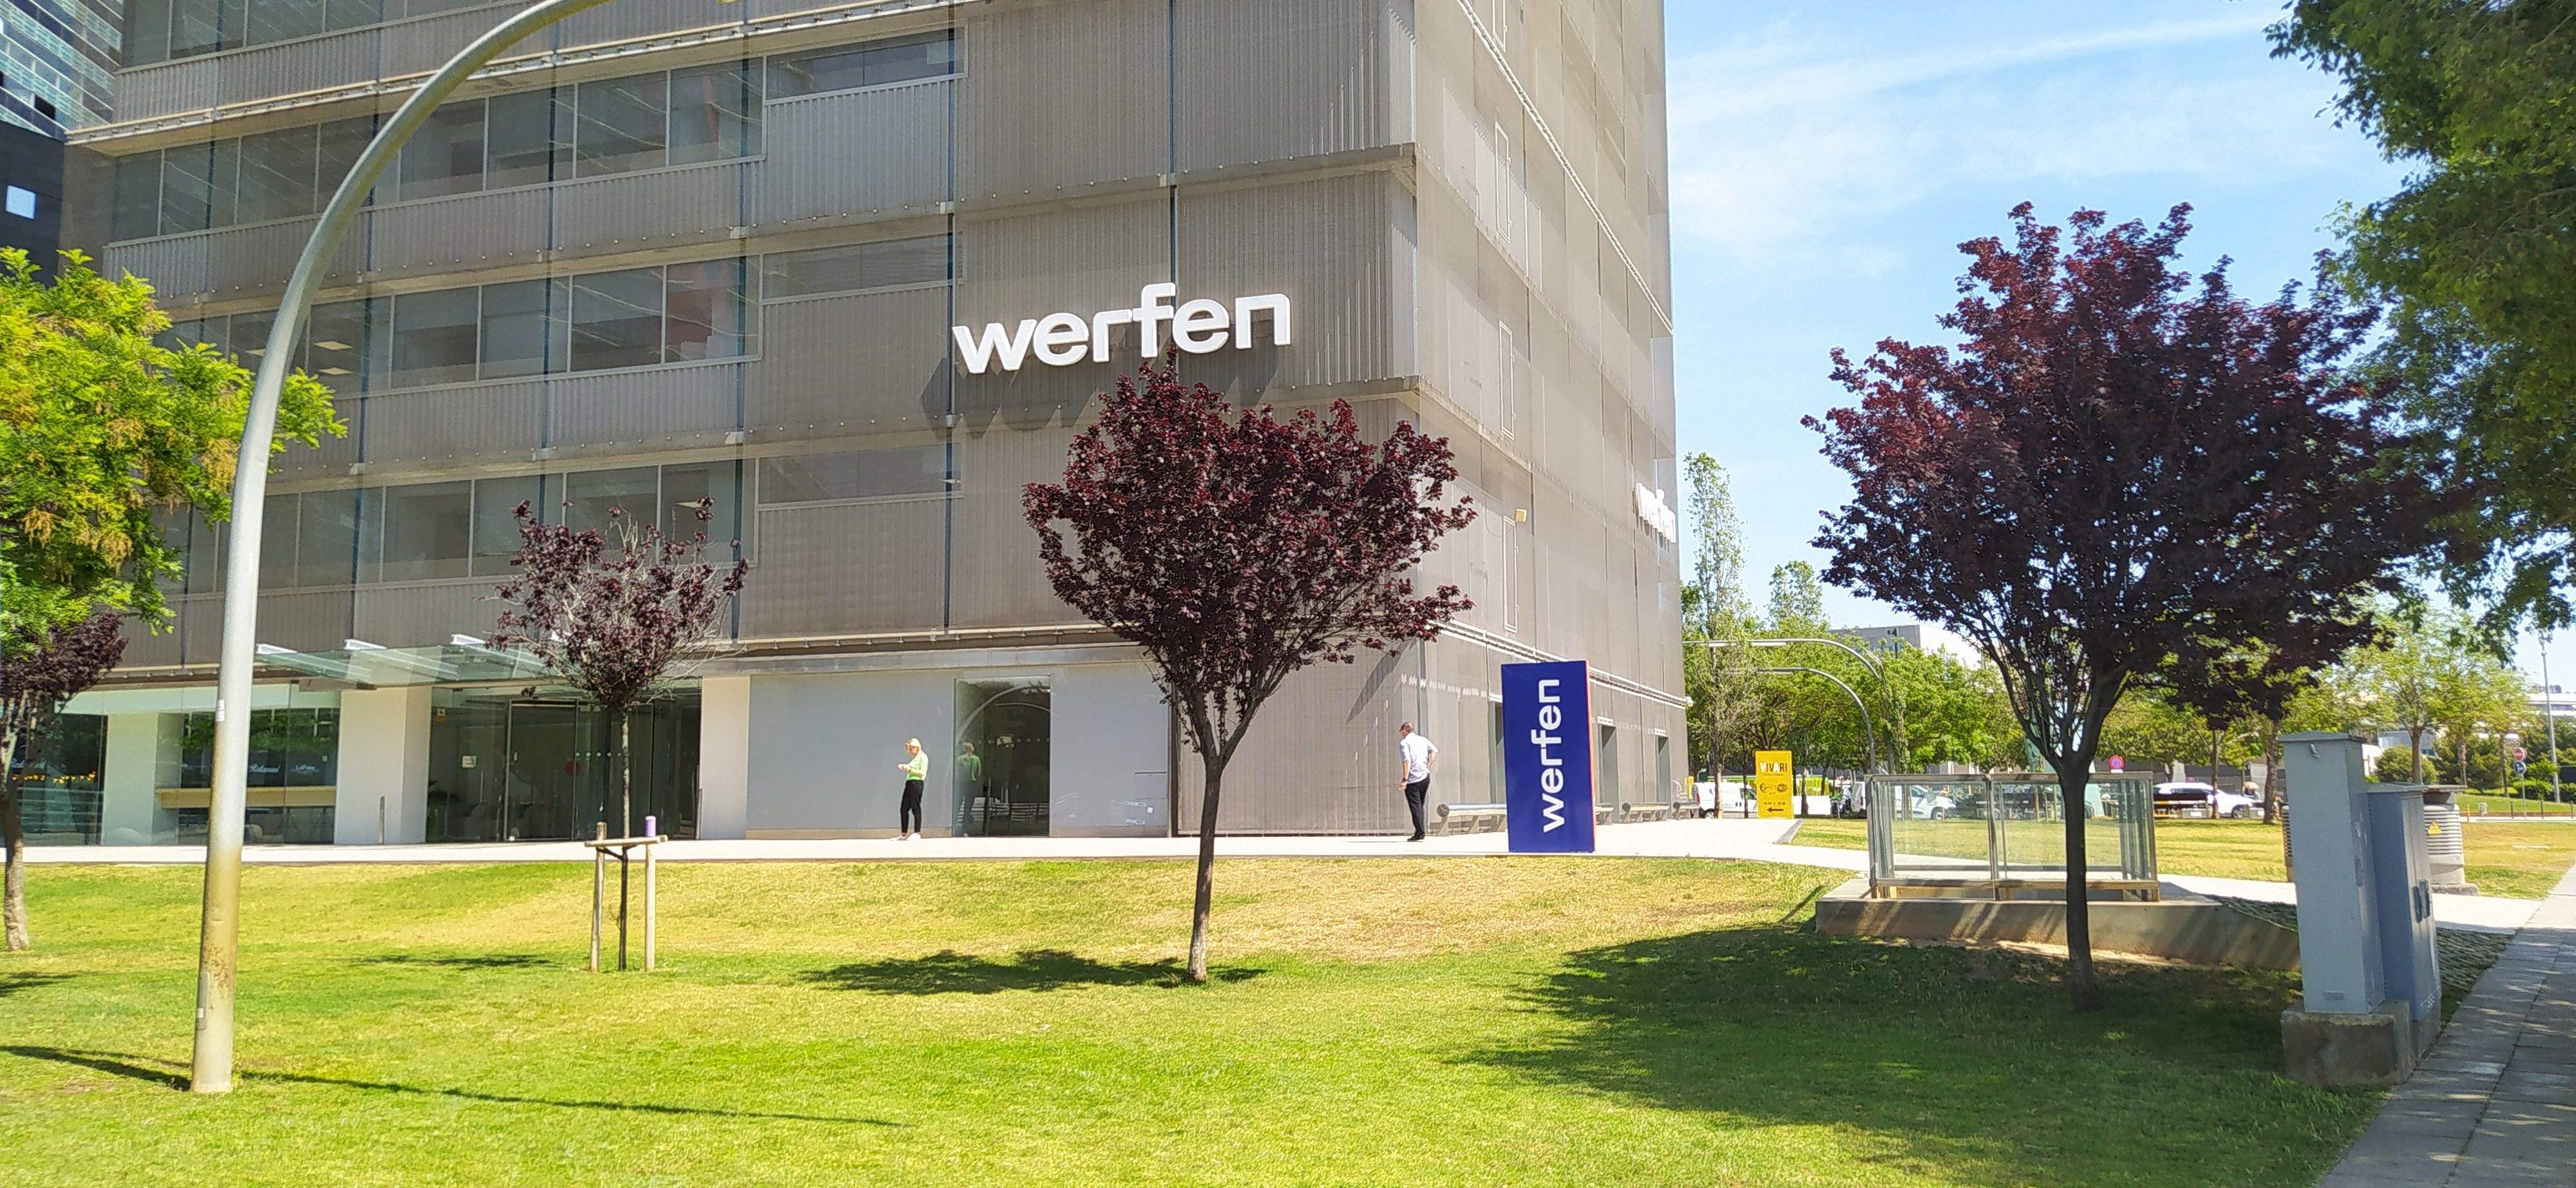 Werfen ven a Palex la seva filial de distribució científica a Espanya per 100 milions